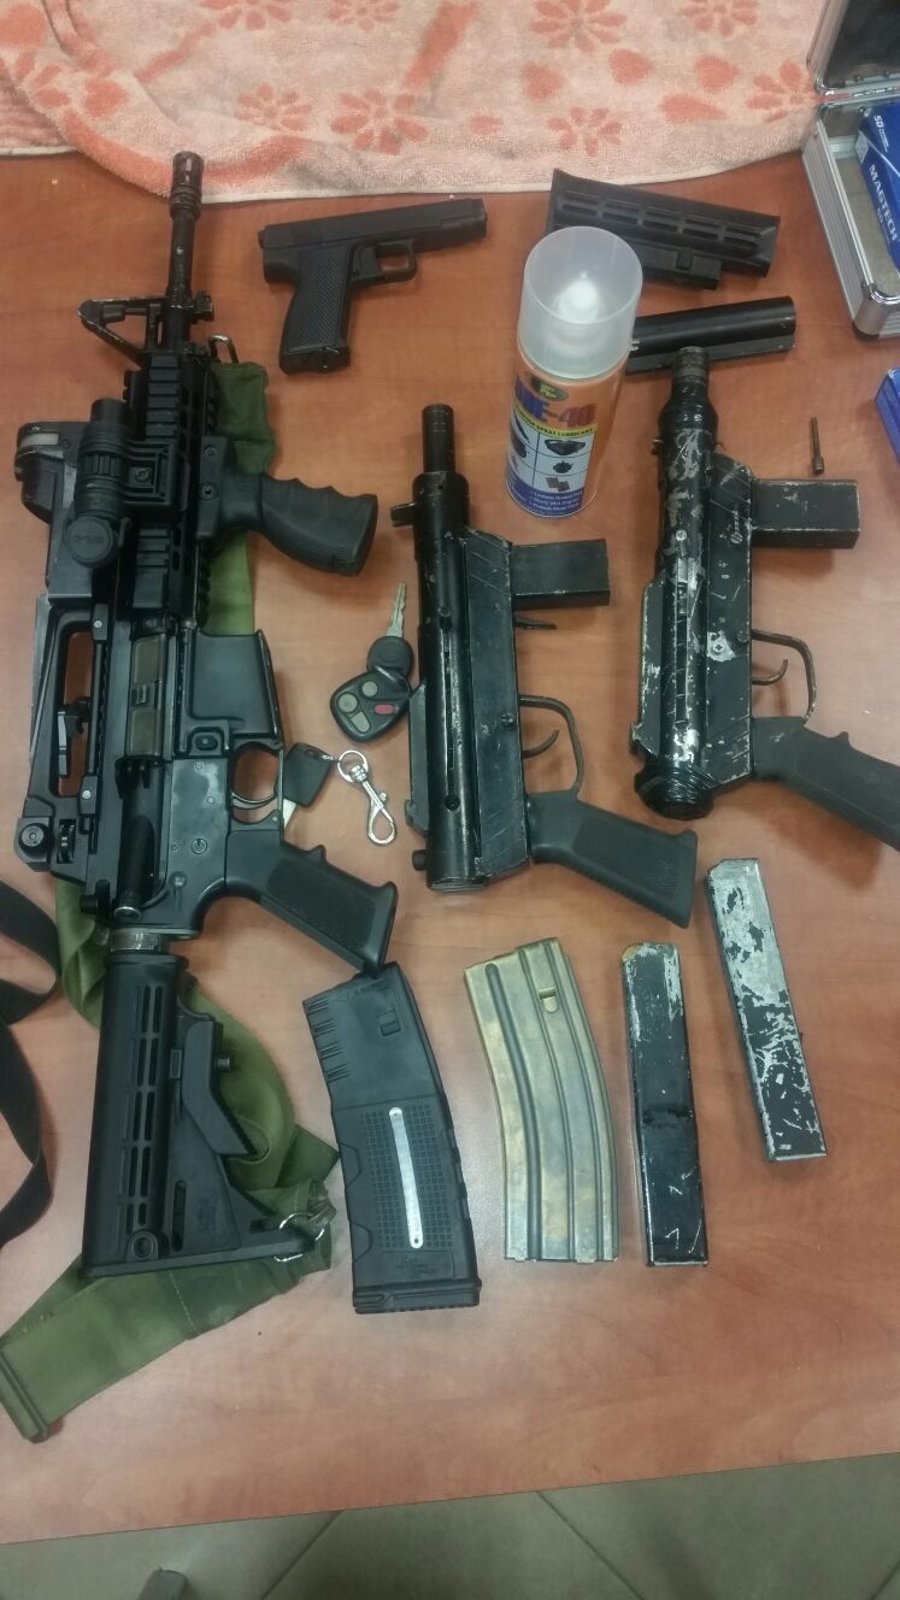 כוחות הביטחון תפסו הלילה: מבוקשים, נשק וכסף מזוייף